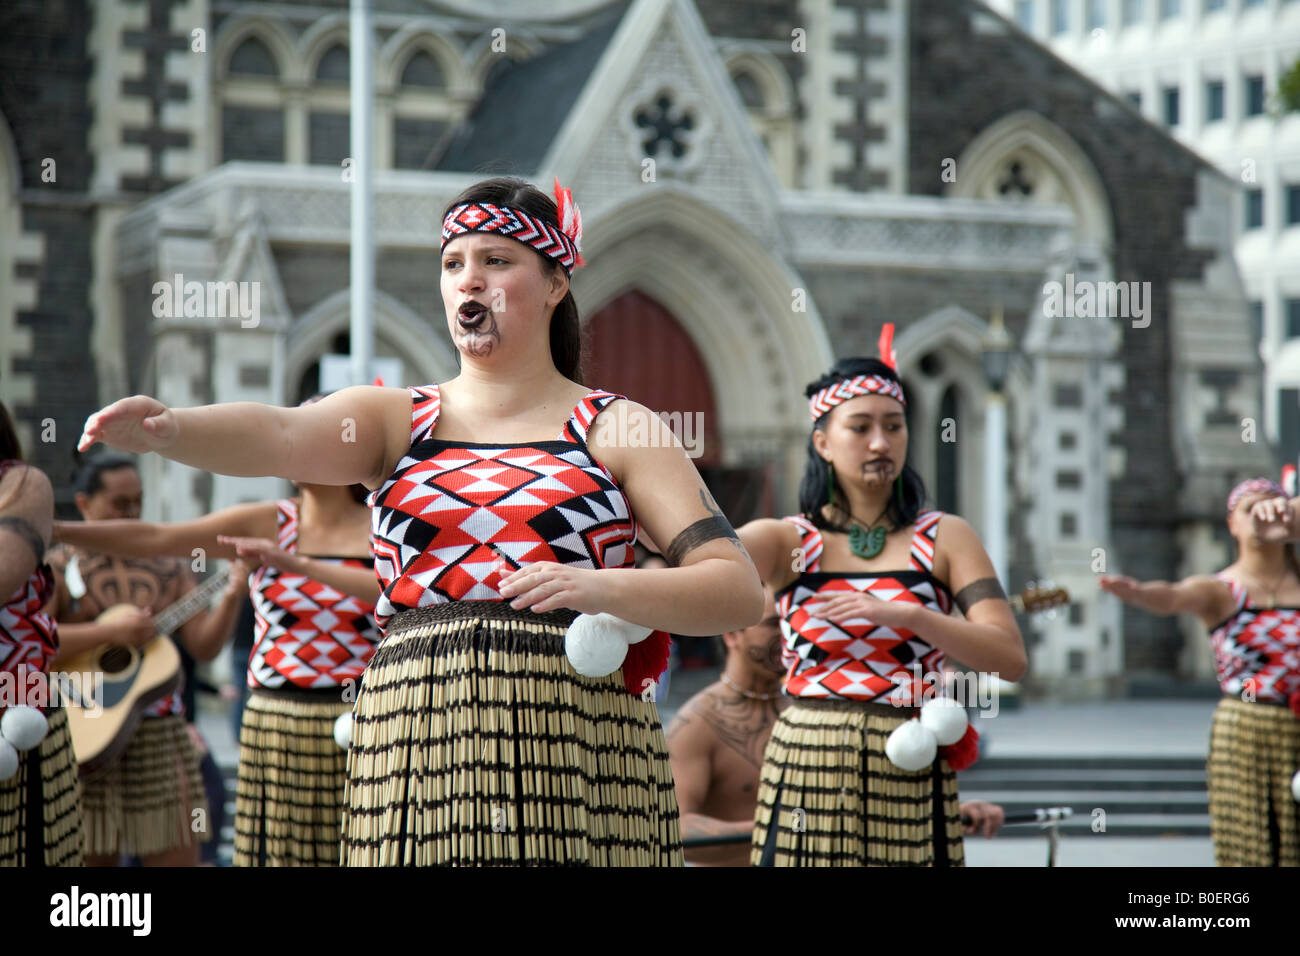 Ballerine maori a Christchurch che eseguono tradizionali routine di danza maori nella piazza pubblica, ballerine donne raffigurate, nuova Zelanda Foto Stock